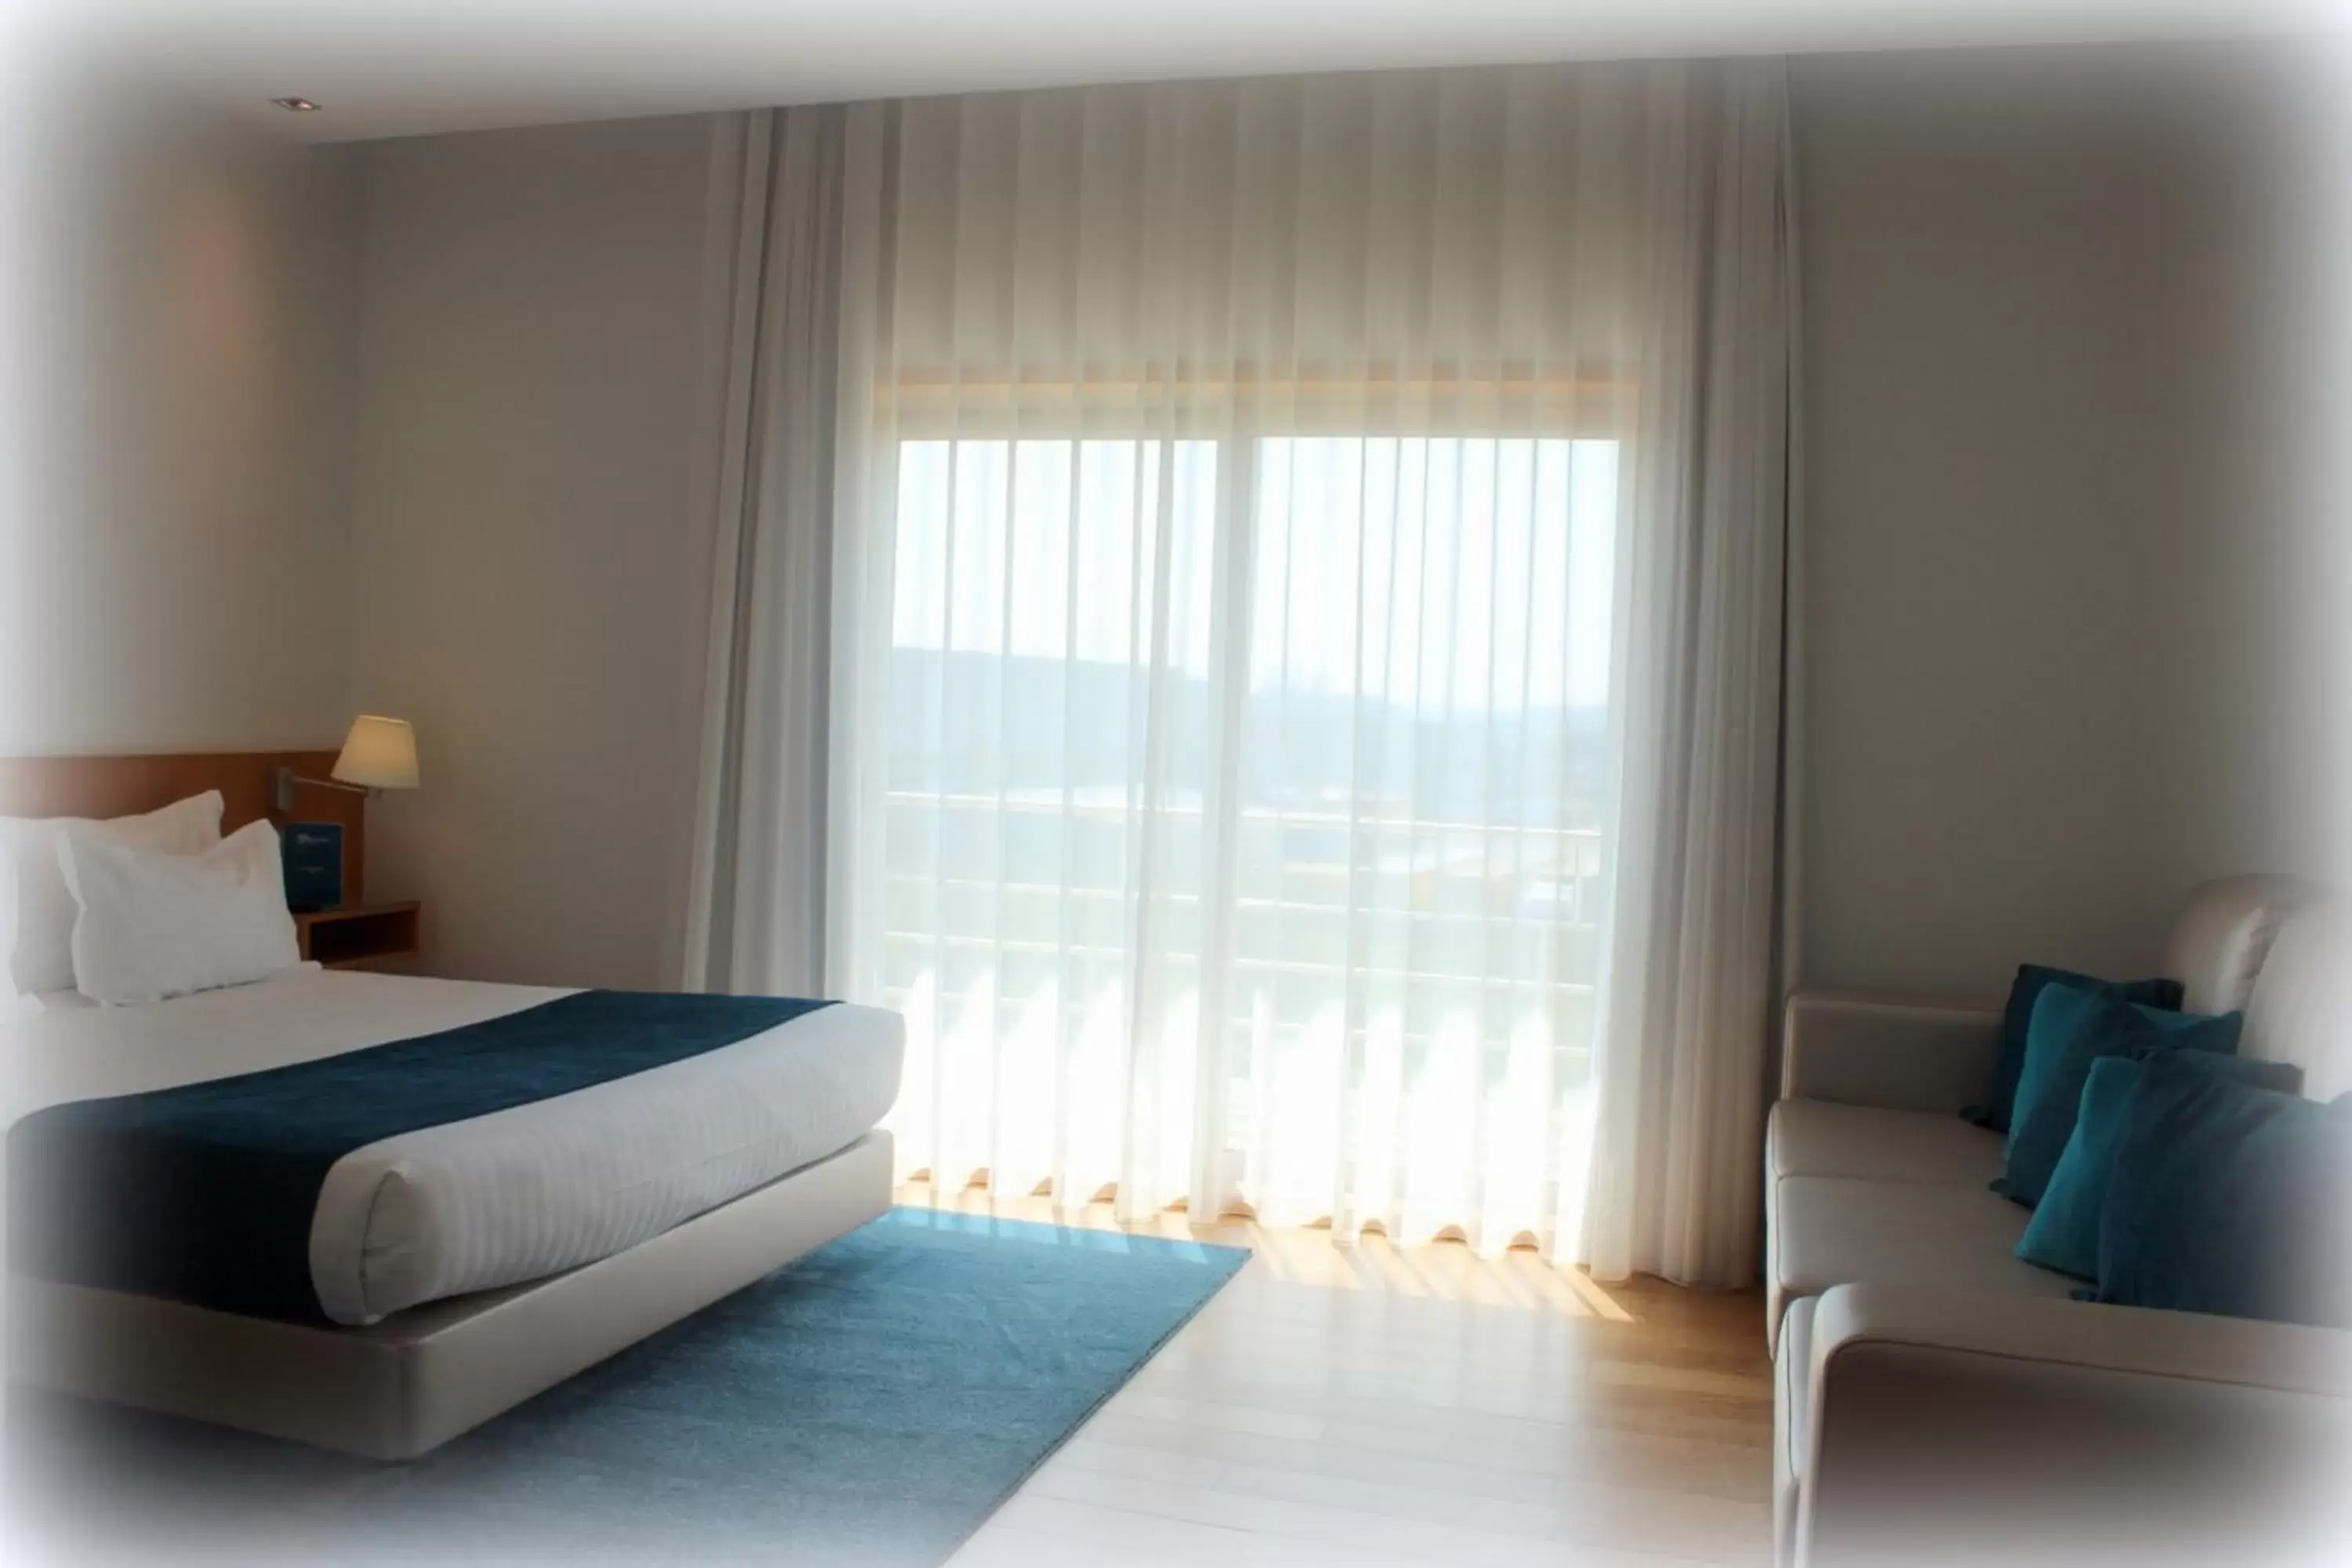 Bed, Room Photo in OPOHOTEL Porto Aeroporto